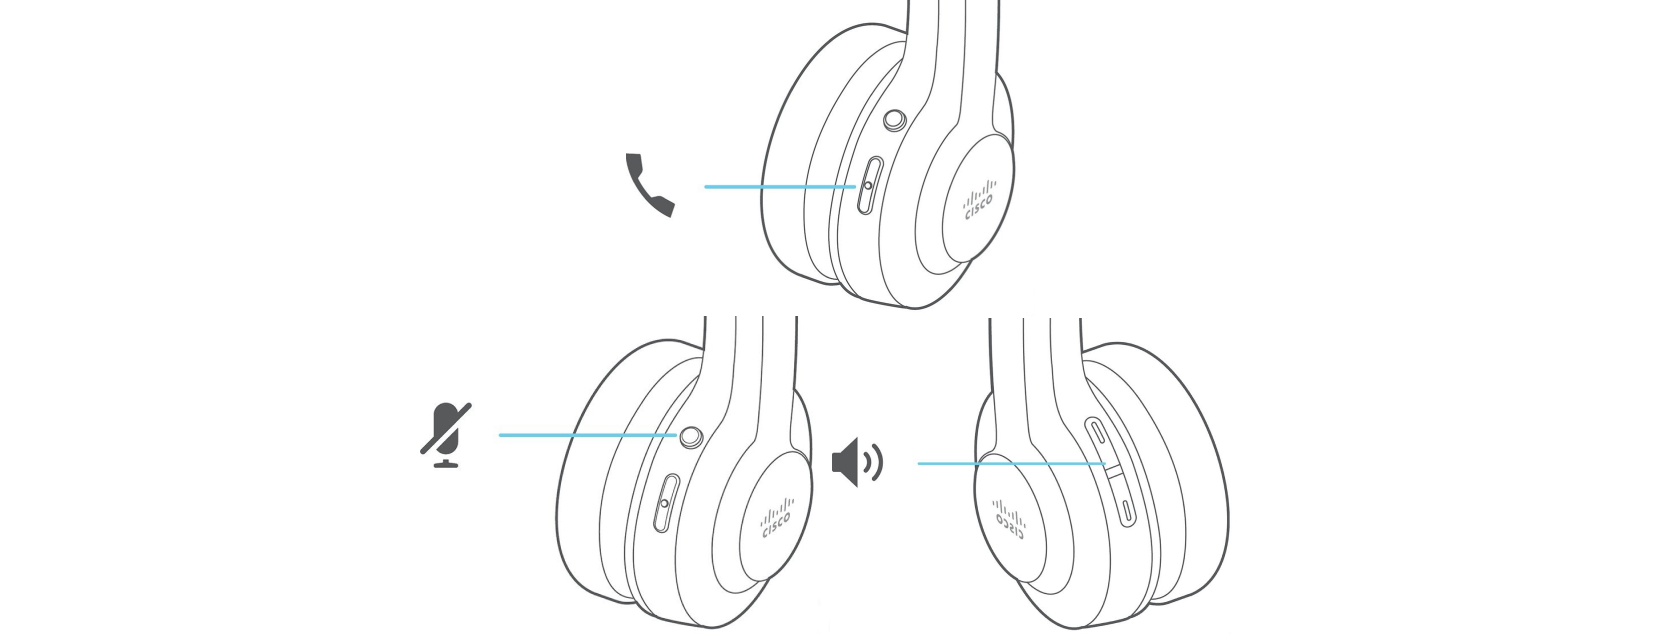 Cisco 頭戴式耳機 560 系列呼叫控制。 "呼叫" 按鍵位於 ear 杯的前面。 "靜音" 按鍵位於呼叫按鍵之上。 音量控制位於同一耳杯的另一端。